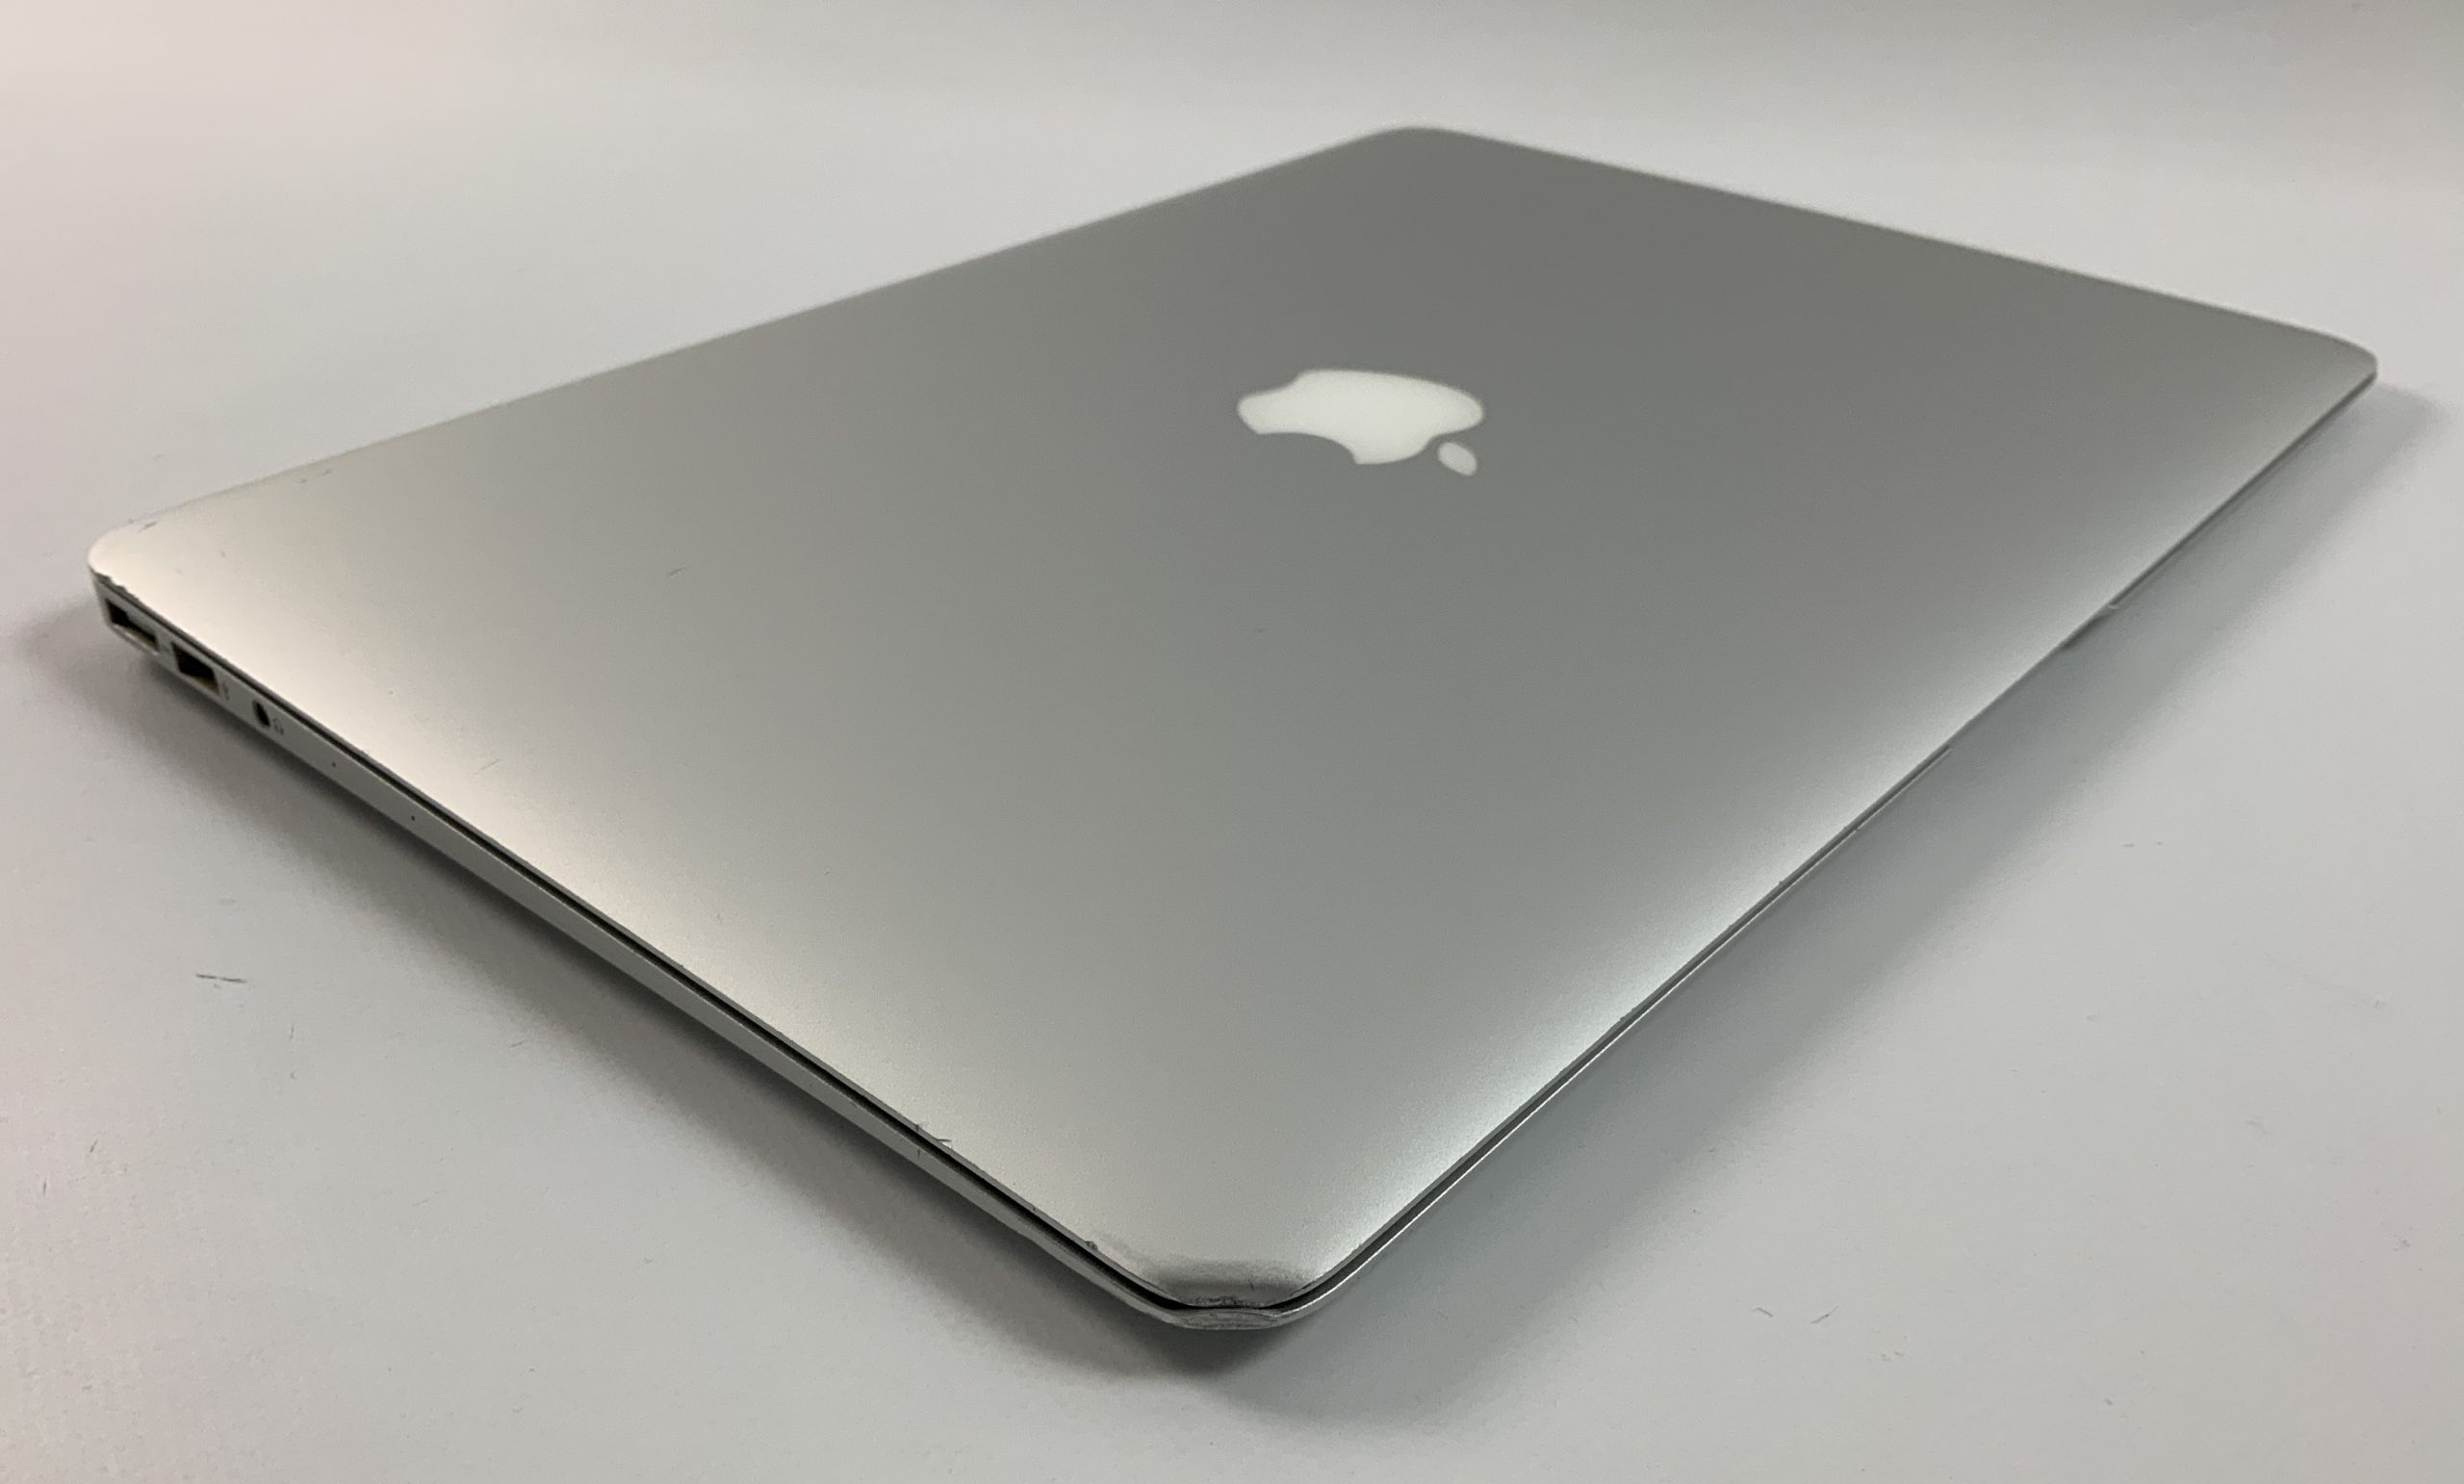 MacBook Air 13" Mid 2017 (Intel Core i5 1.8 GHz 8 GB RAM 256 GB SSD), Intel Core i5 1.8 GHz, 8 GB RAM, 256 GB SSD, Afbeelding 5